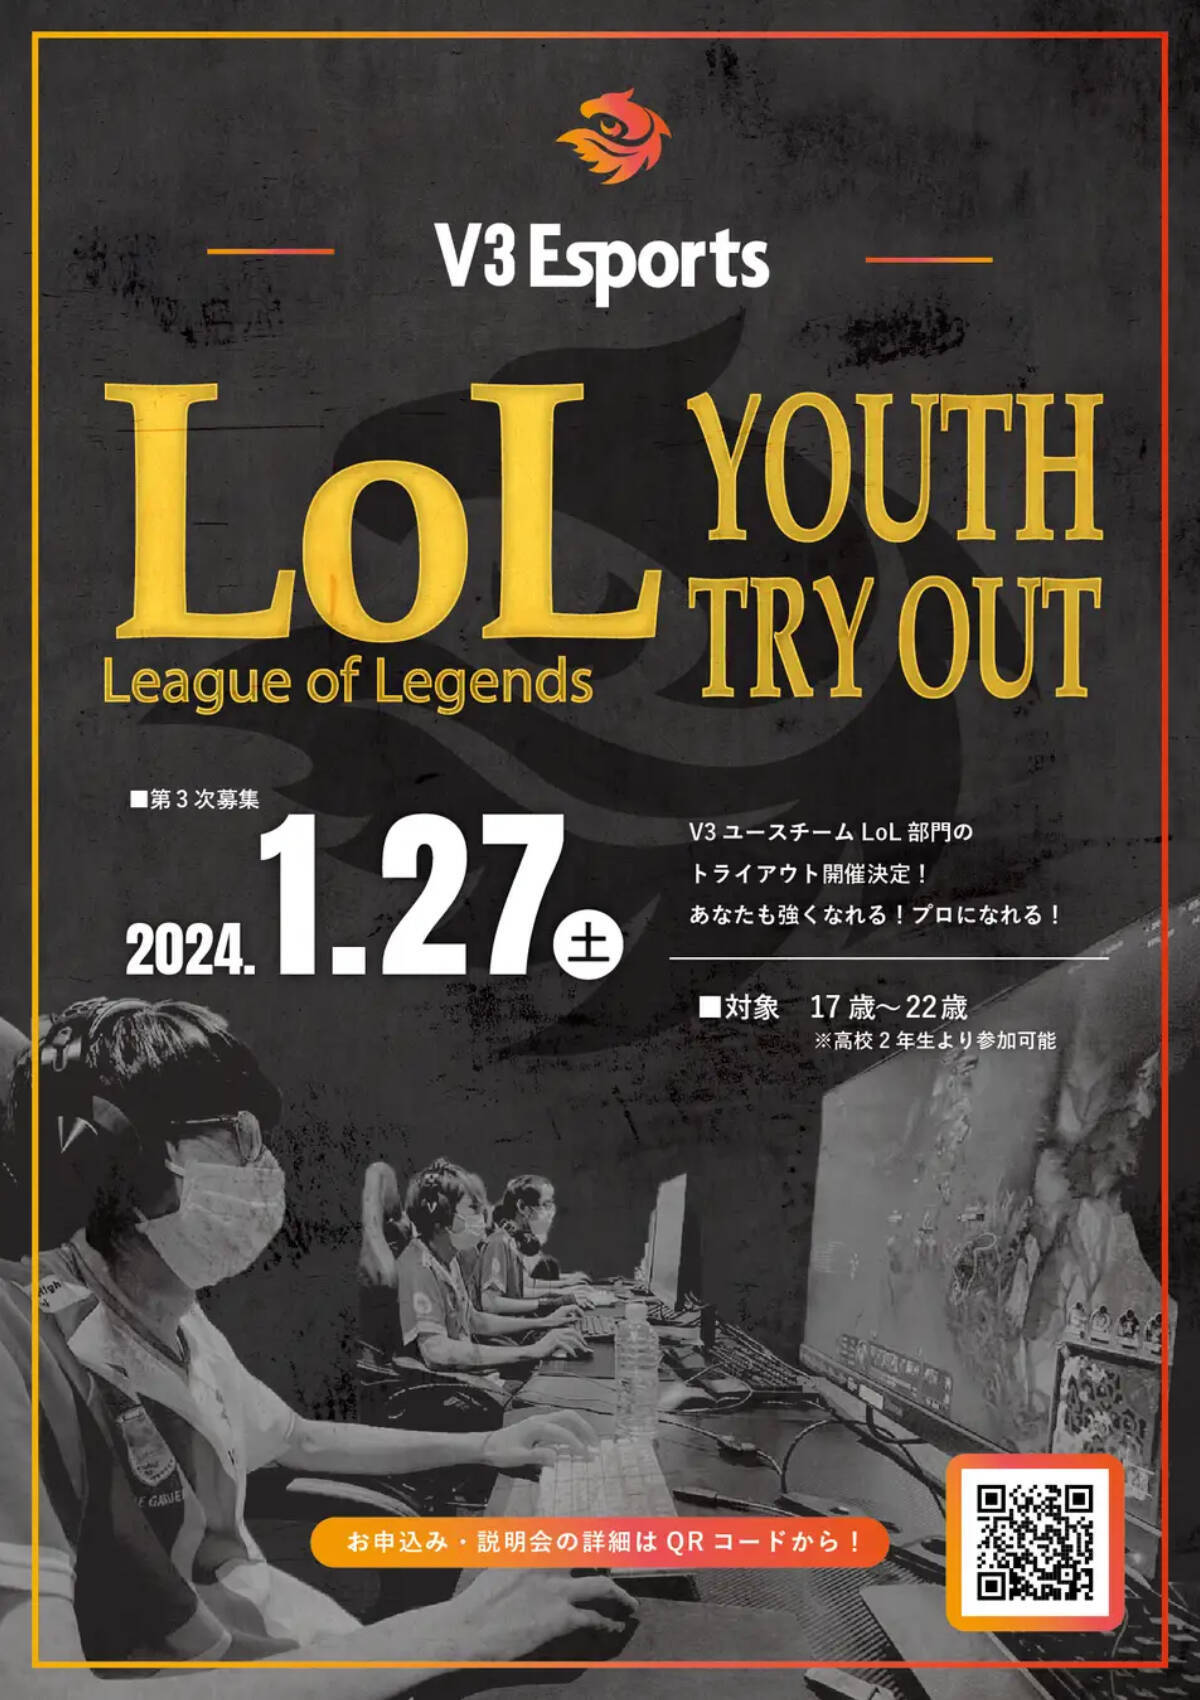 V3Esportsがユースチーム「League of Legends」トライアウトを開催、17歳から22歳までが対象